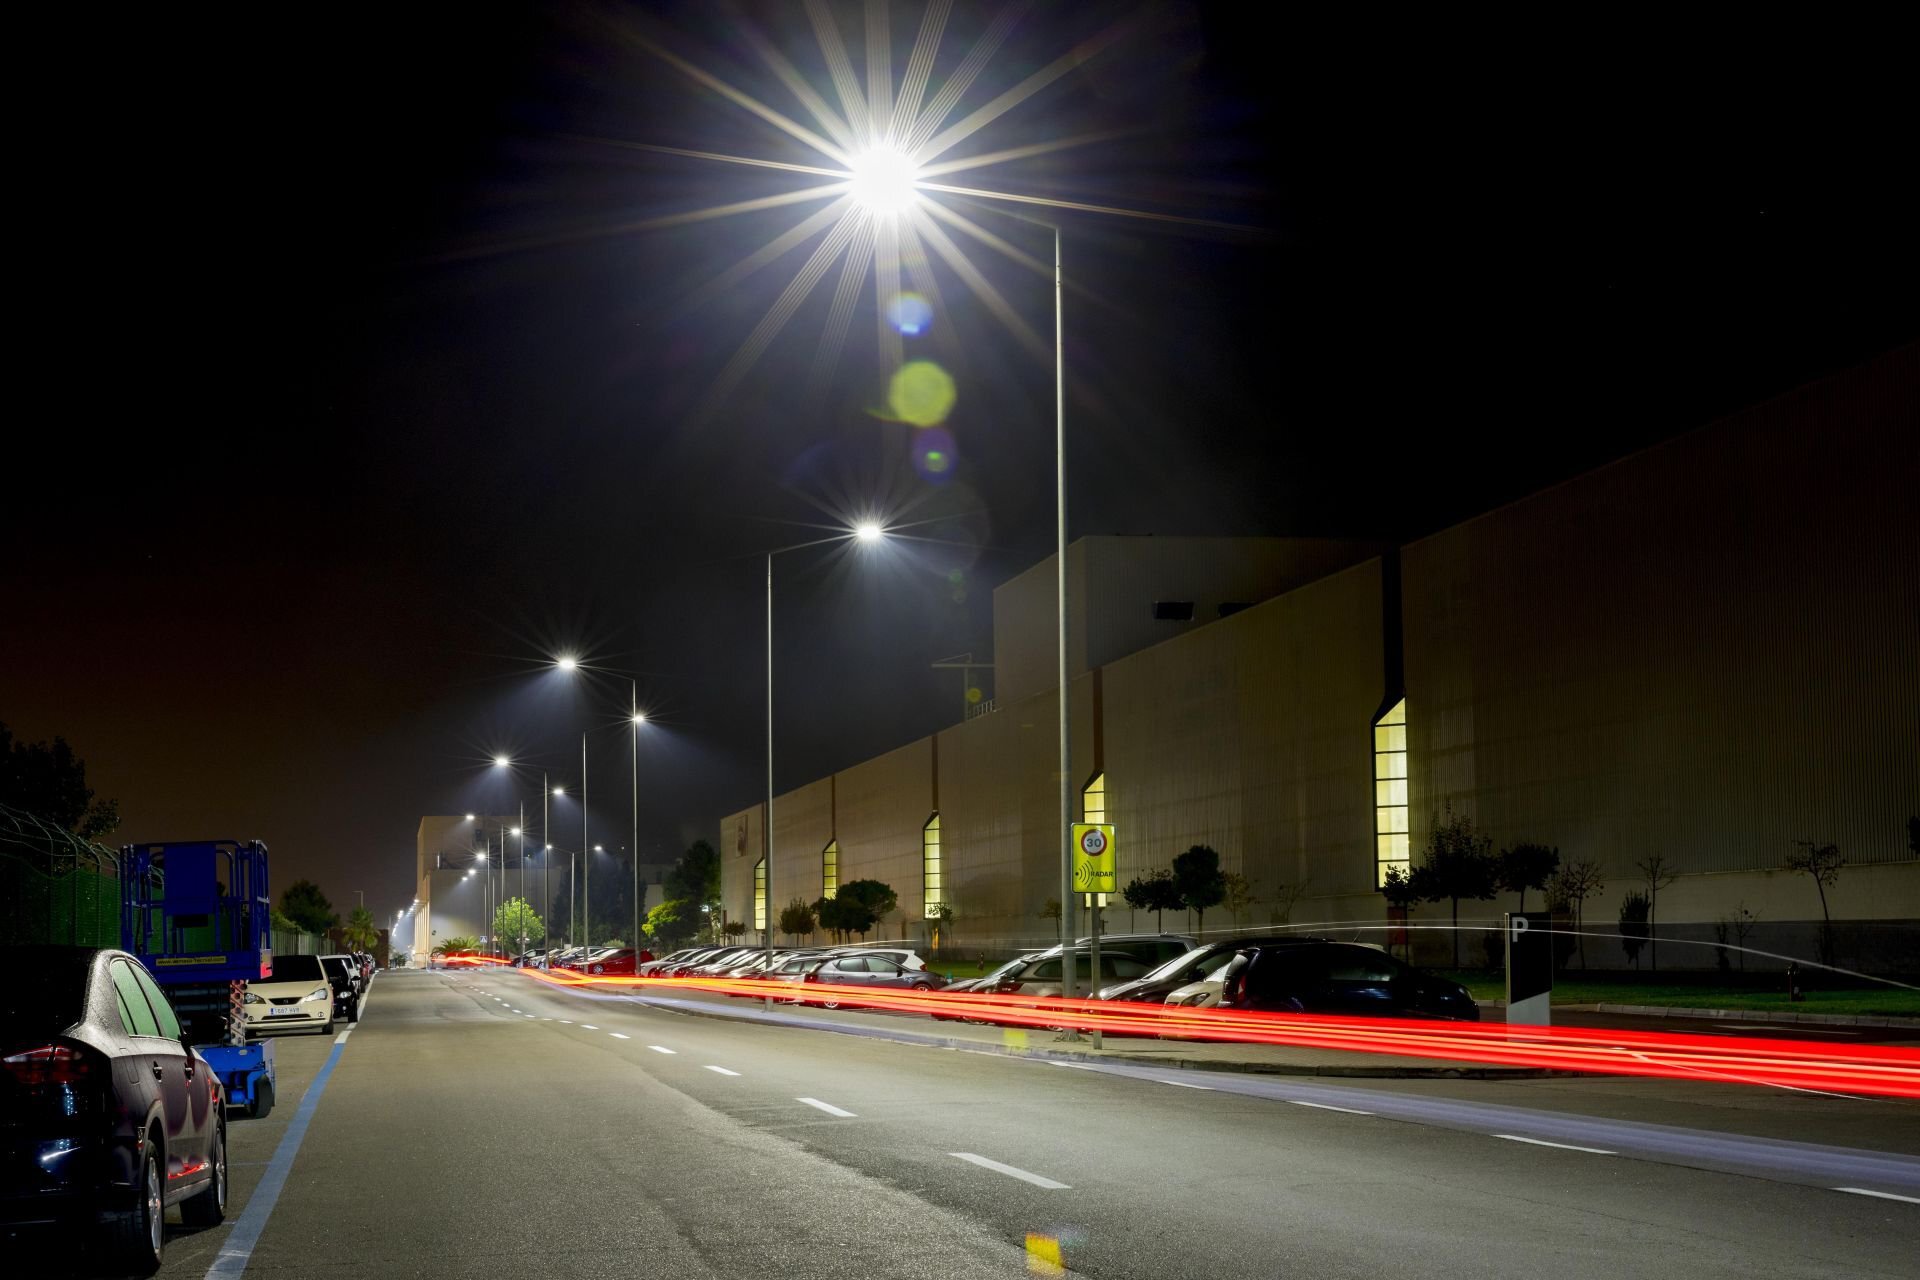 Chytré LED lampy v továrně SEAT